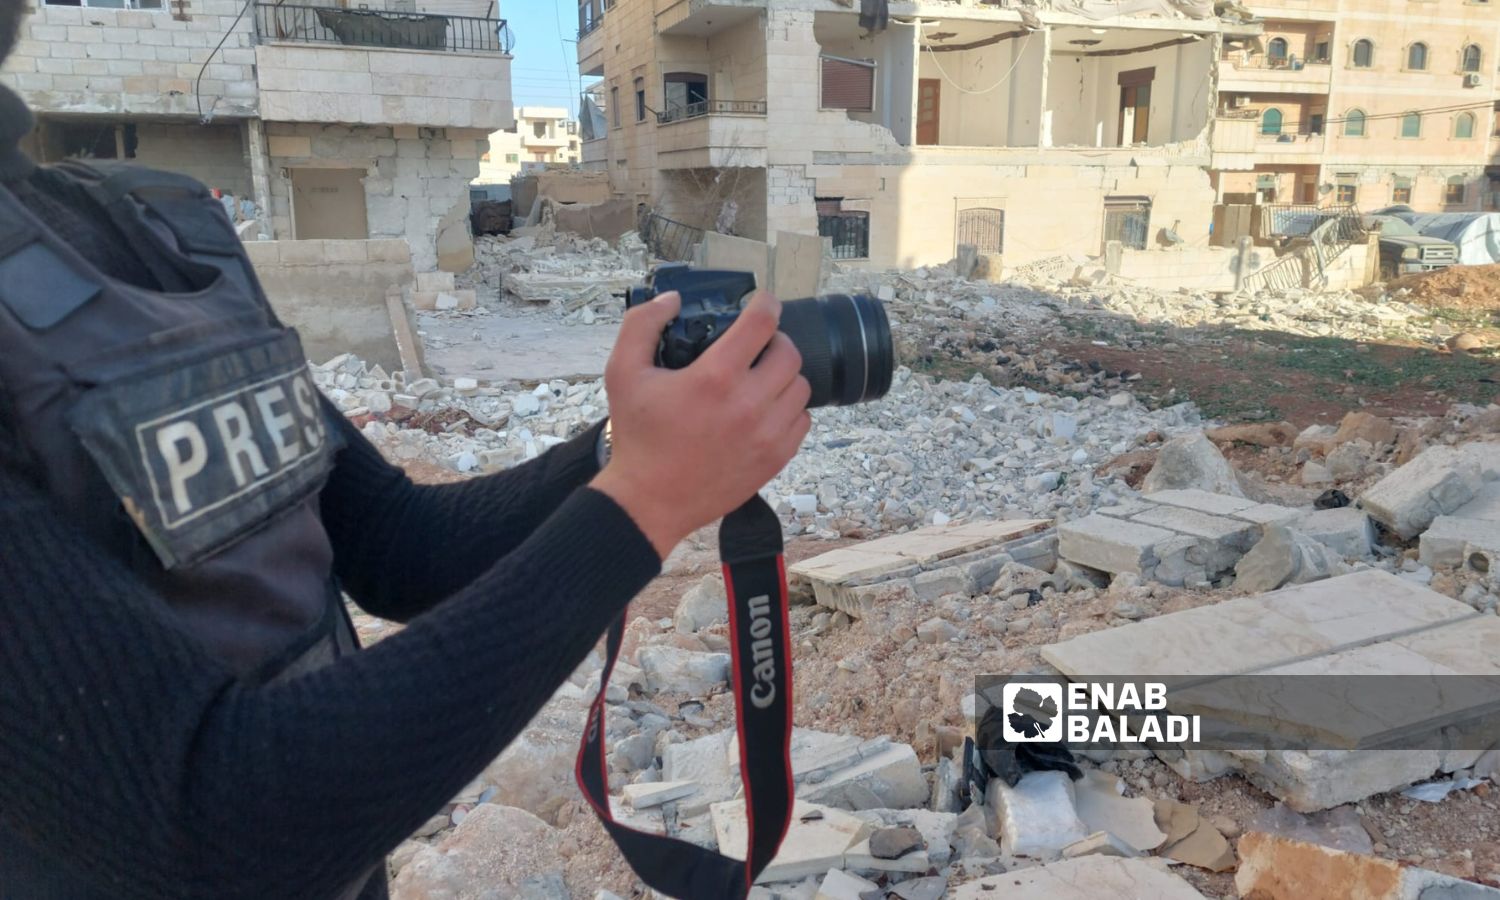 مراسل عنب بلدي في ريف حلب يصور آثار الدمار إثر زلزال ضرب جنوبي تركيا وأربع محافظات سورية - 4 من آذار 2023 (عنب بلدي)